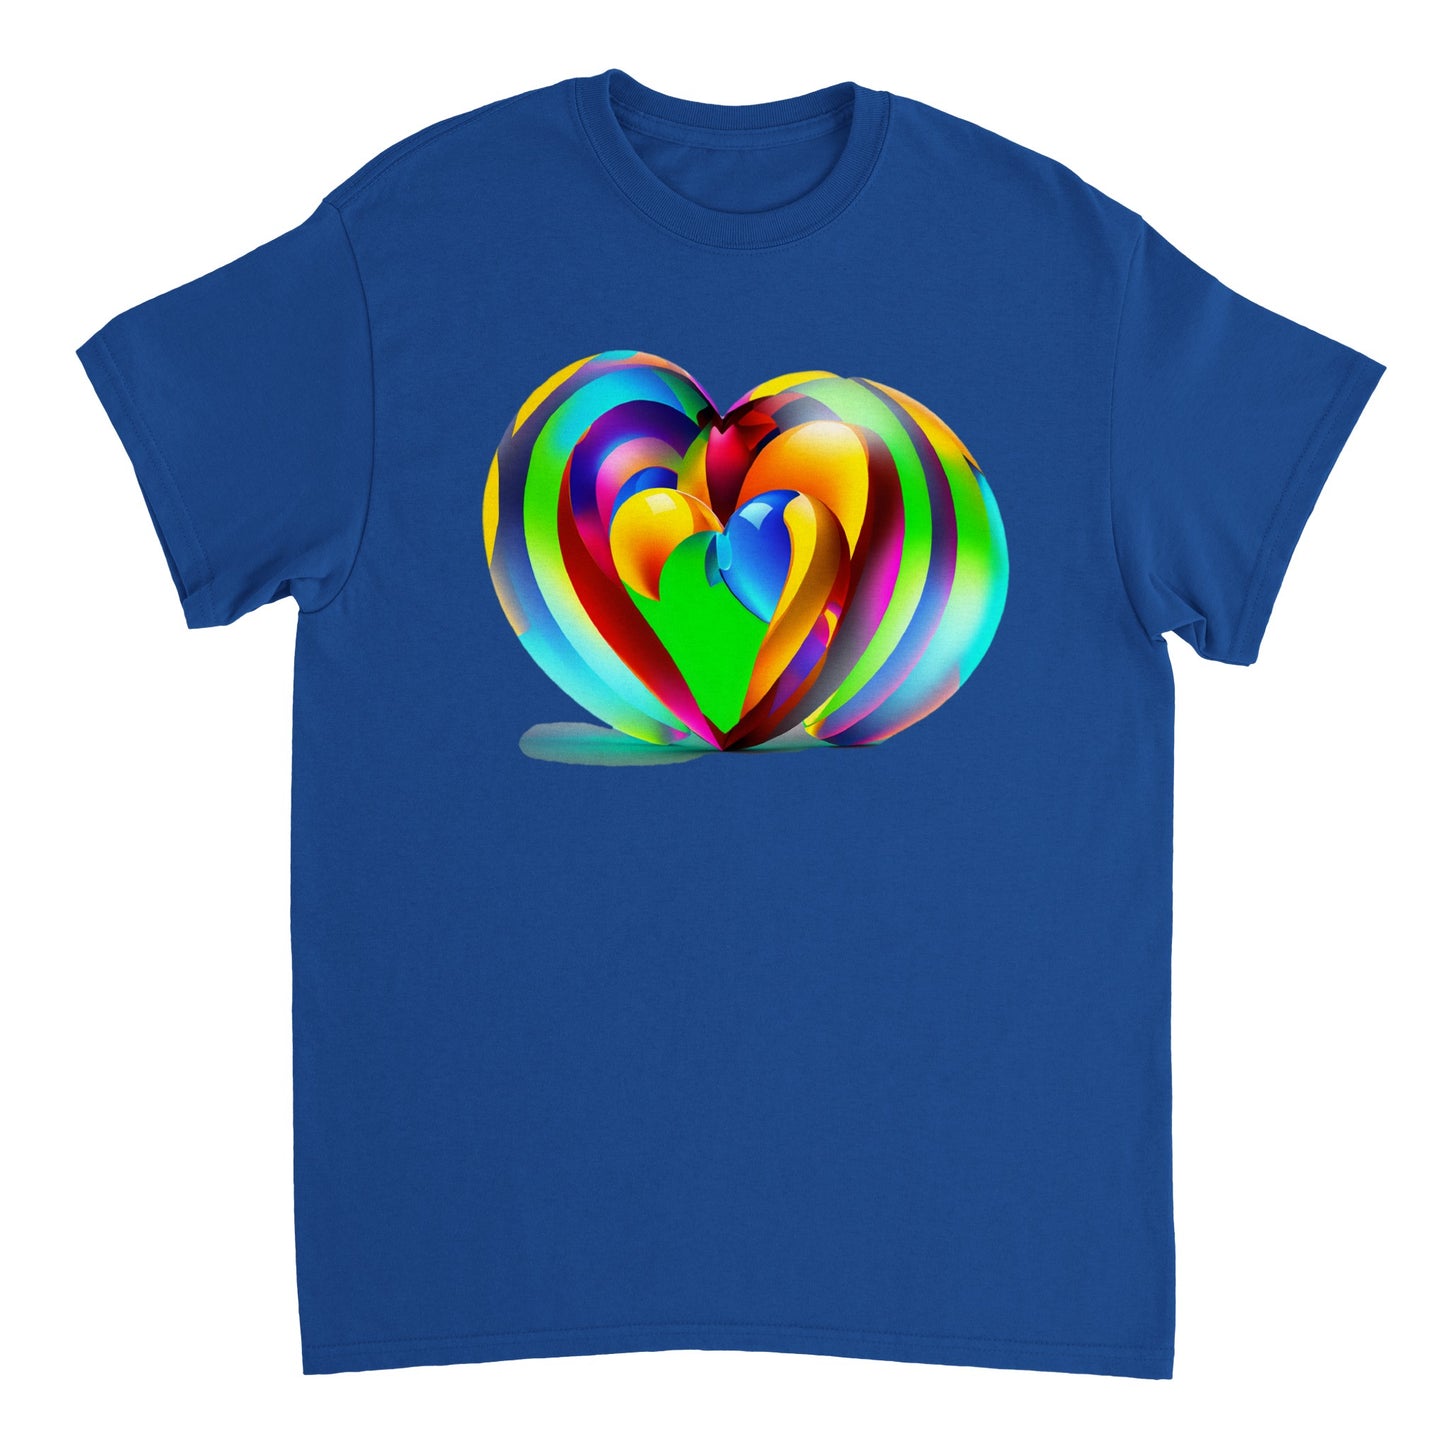 Love Heart - Heavyweight Unisex Crewneck T-shirt 46